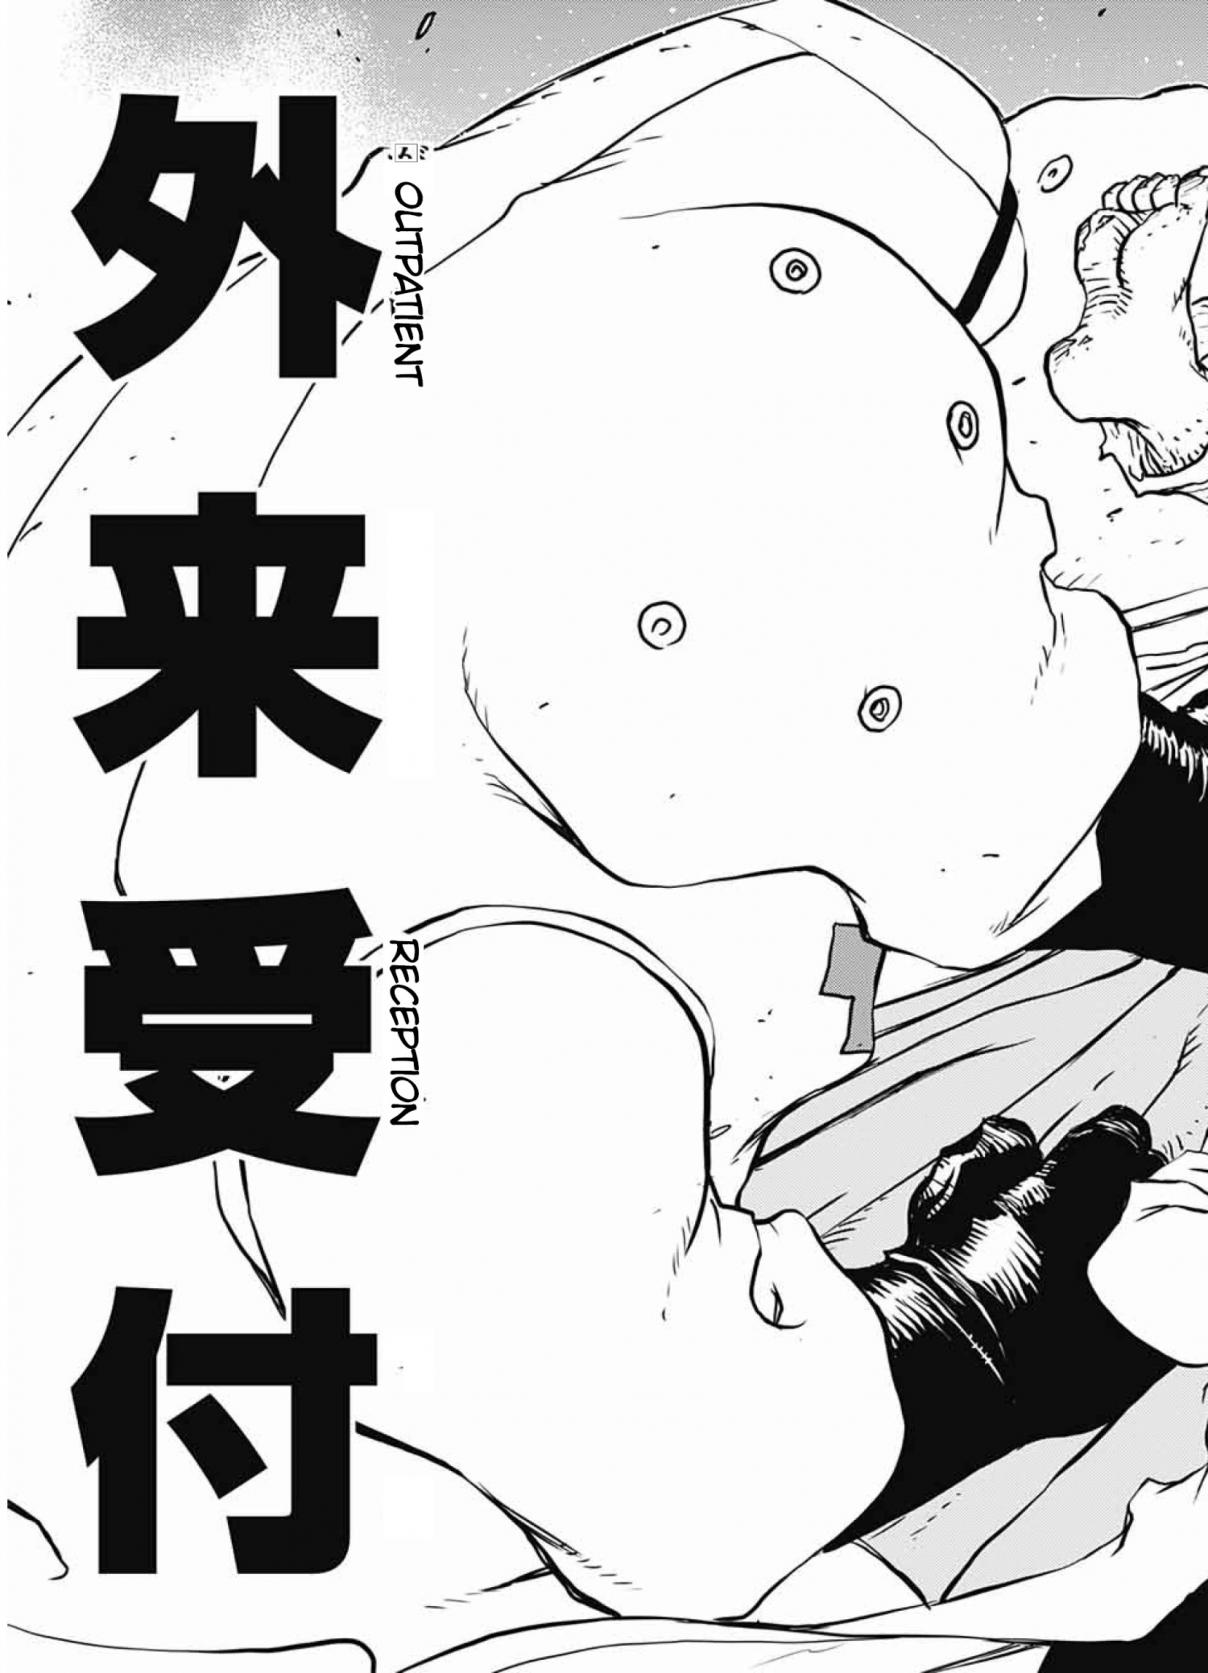 Kekkai Sensen: Back 2 Back Vol. 5 Ch. 14